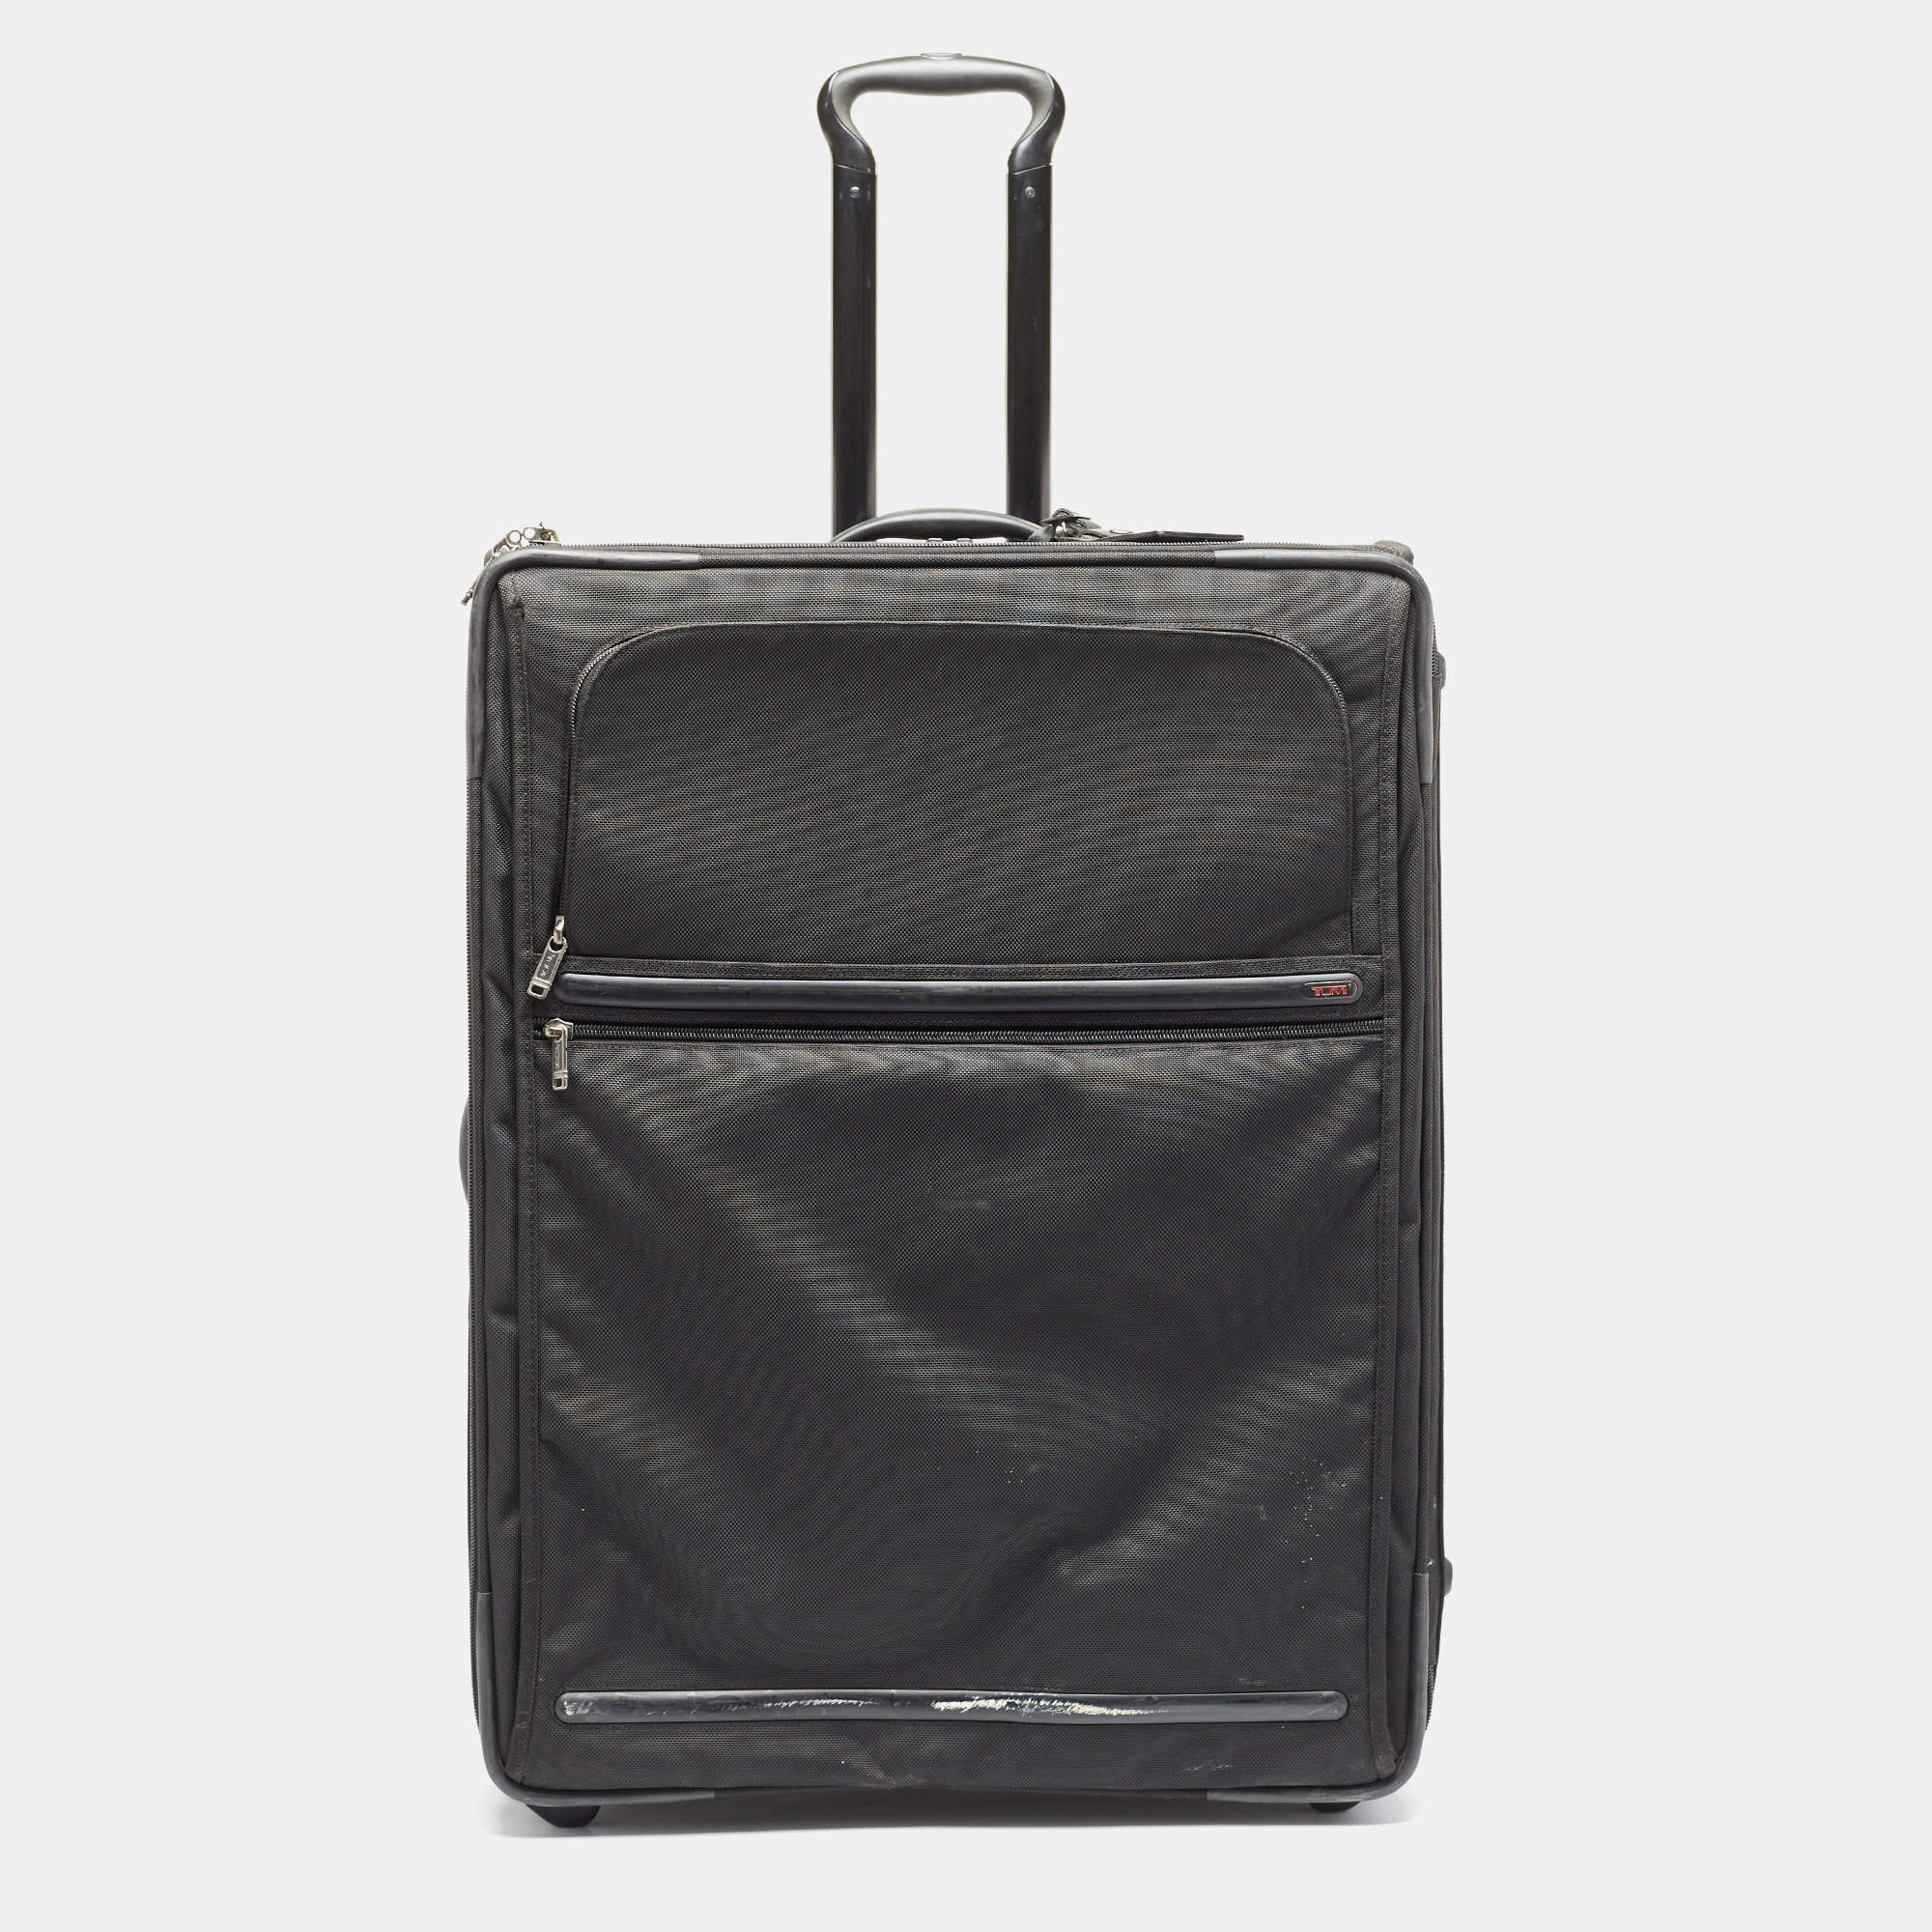 Tumi Black Ballistic Nylon 2 Wheeled Generation 4 Expandable Trip Luggage Tumi The Luxury Closet